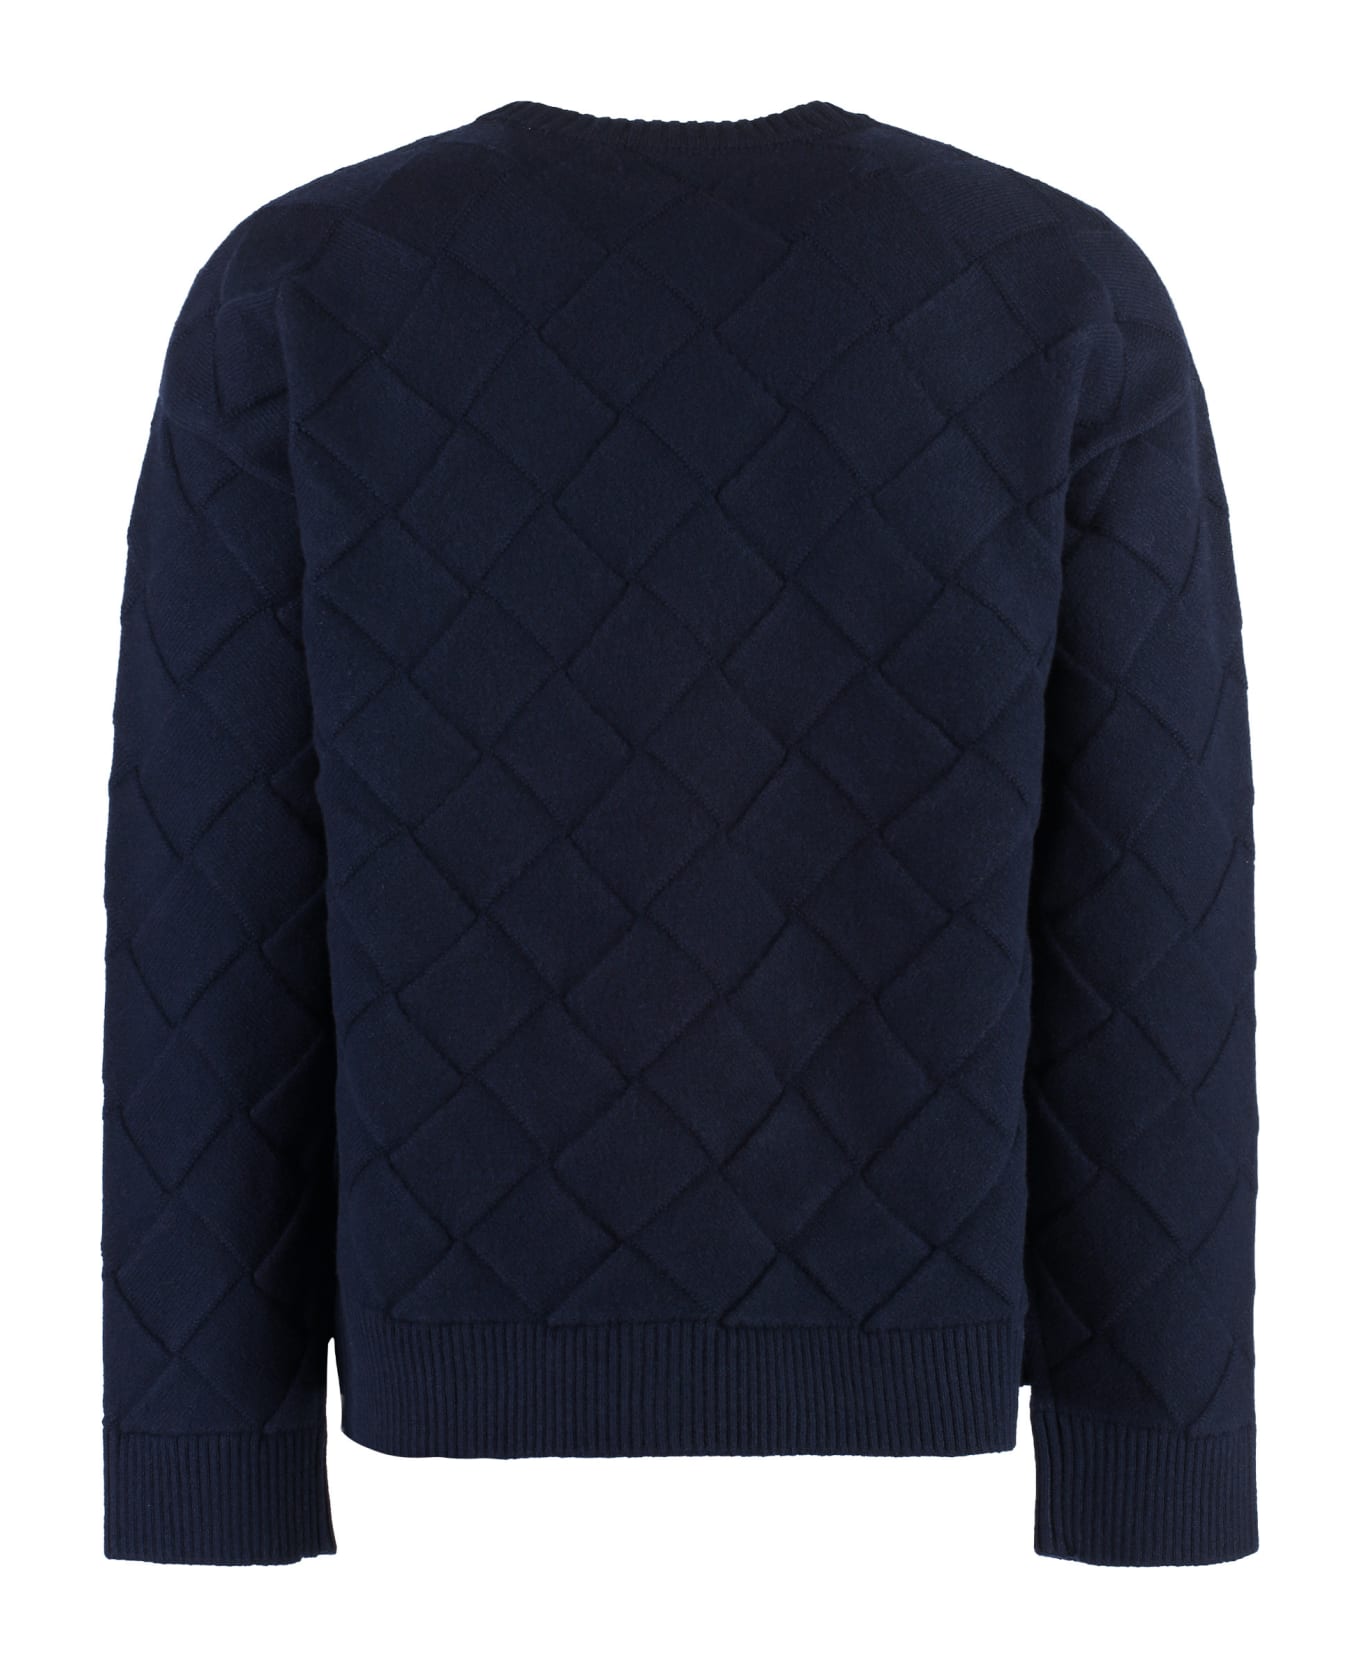 Bottega Veneta Crew-neck Wool Sweater - blue